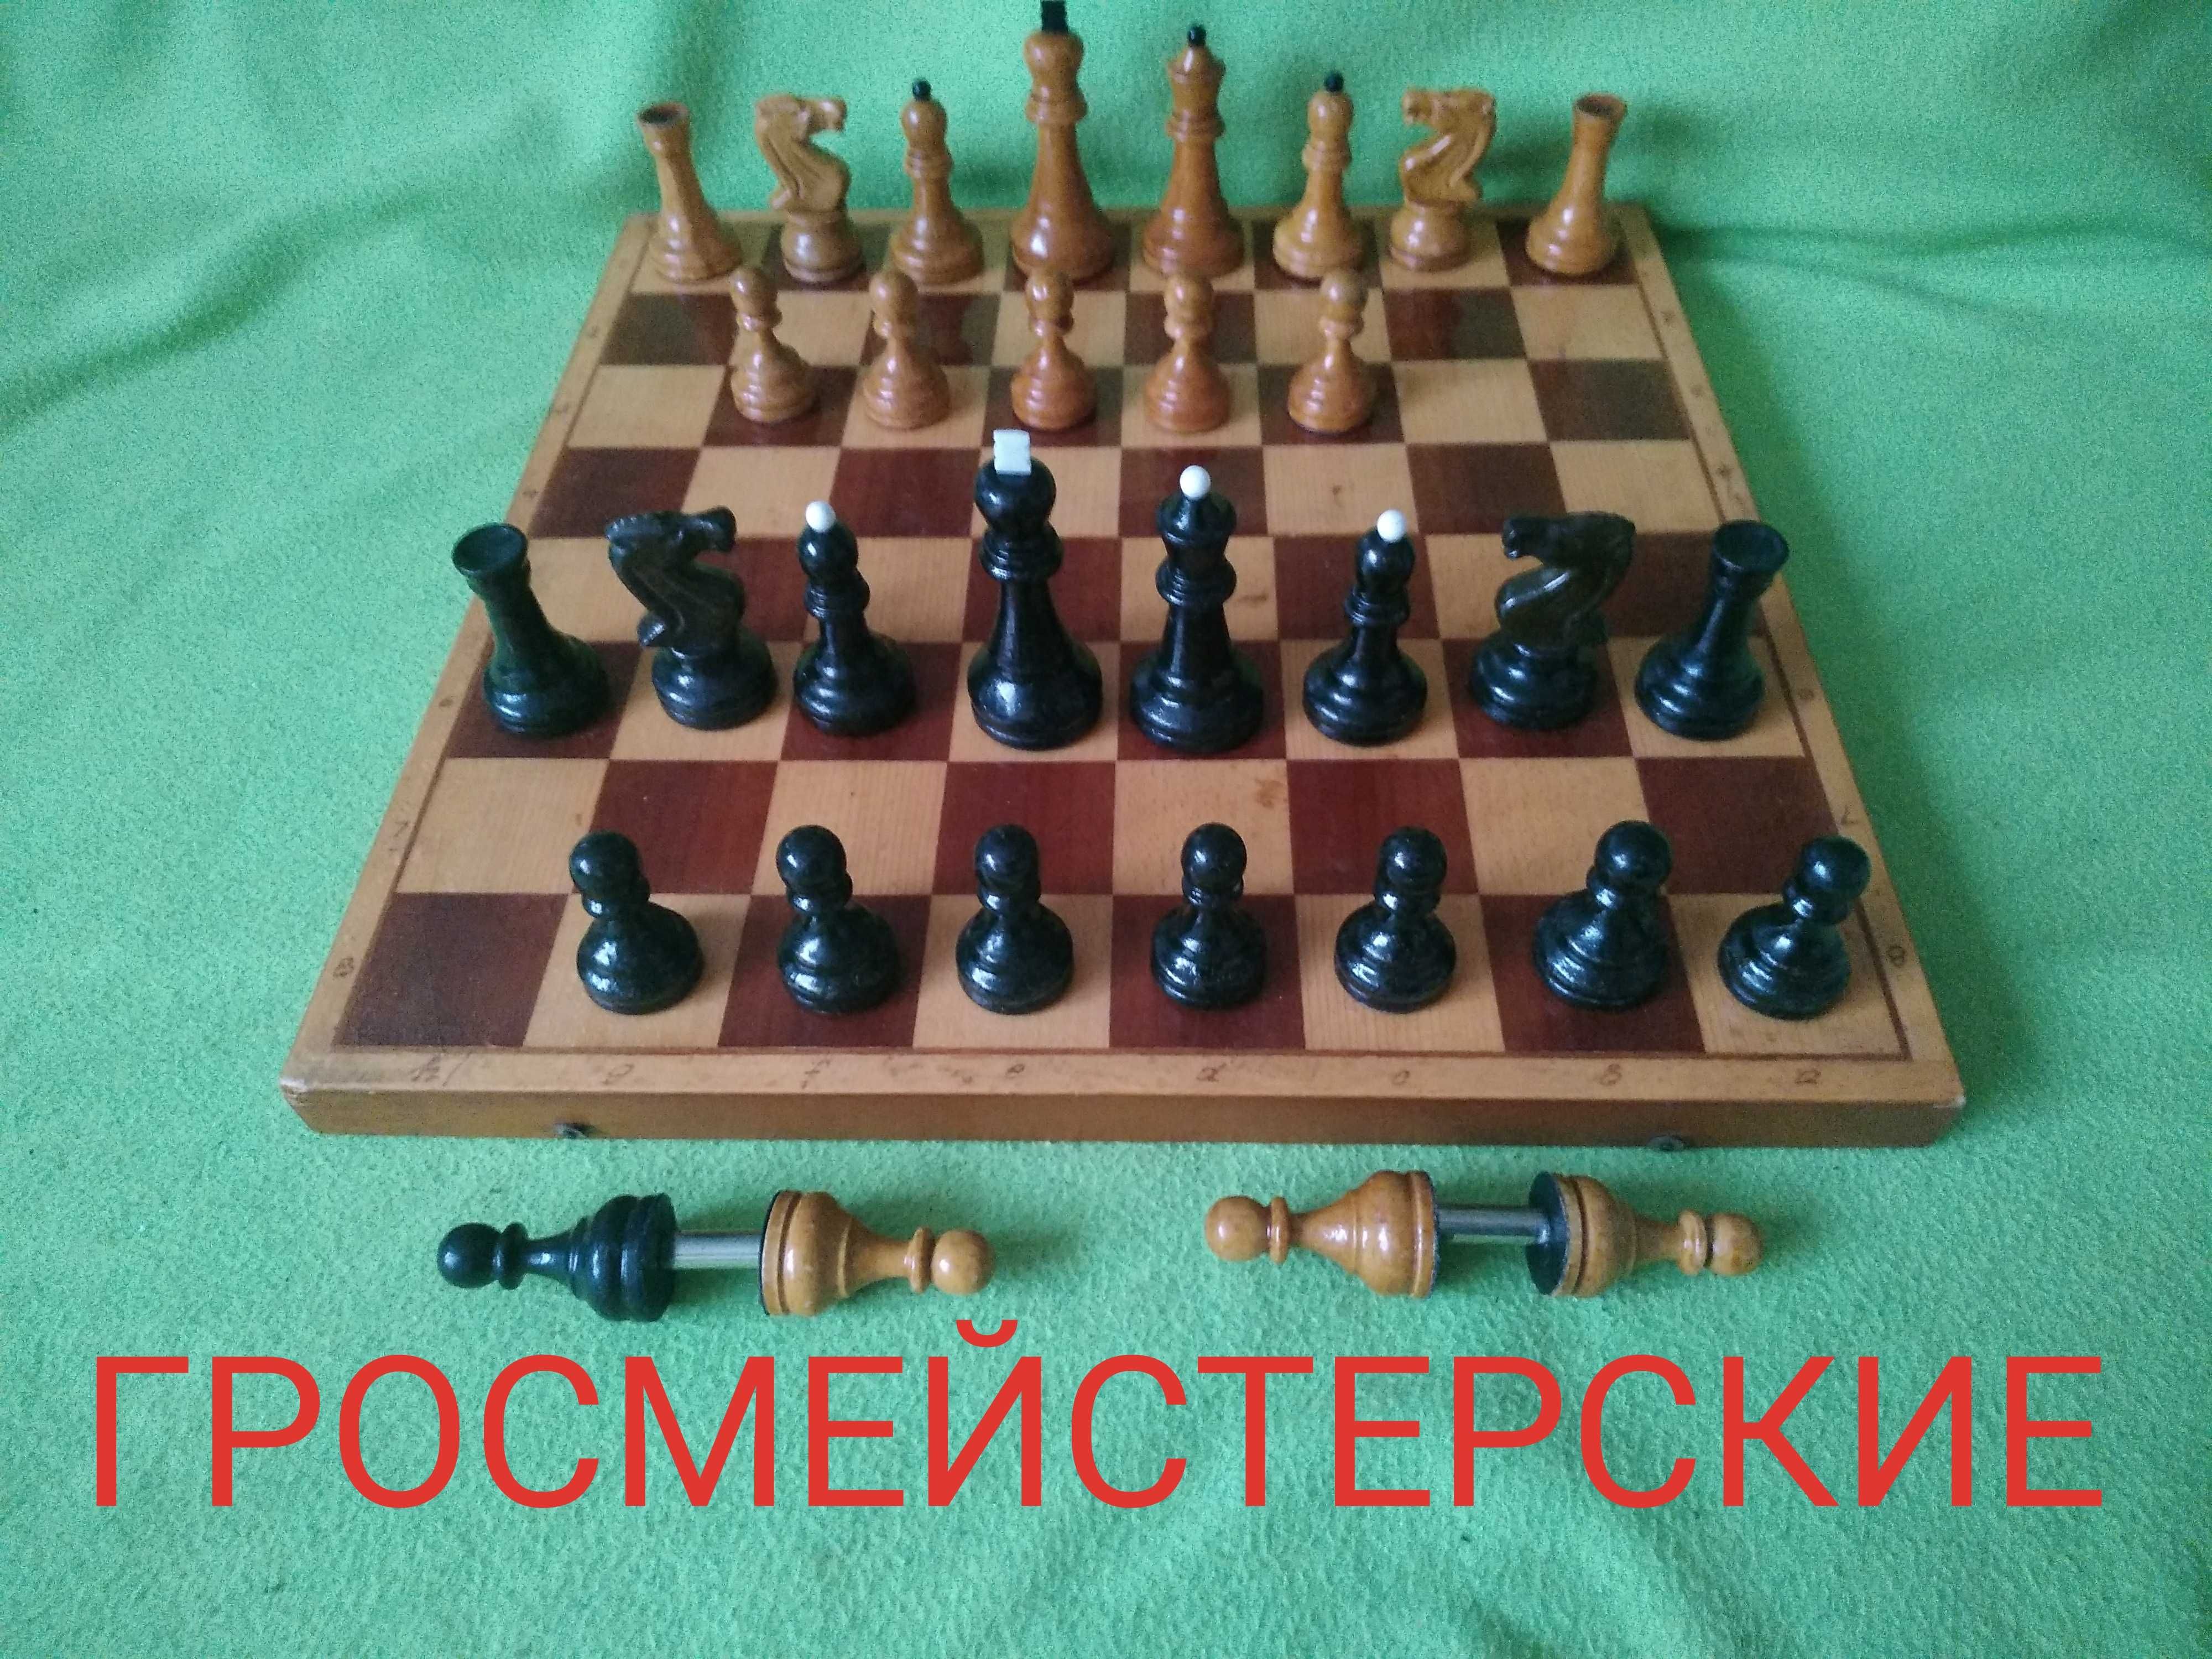 Доска и фигуры ГРОССМЕЙСТЕРСКИЕ шахматы сутяжелителями из СССР.